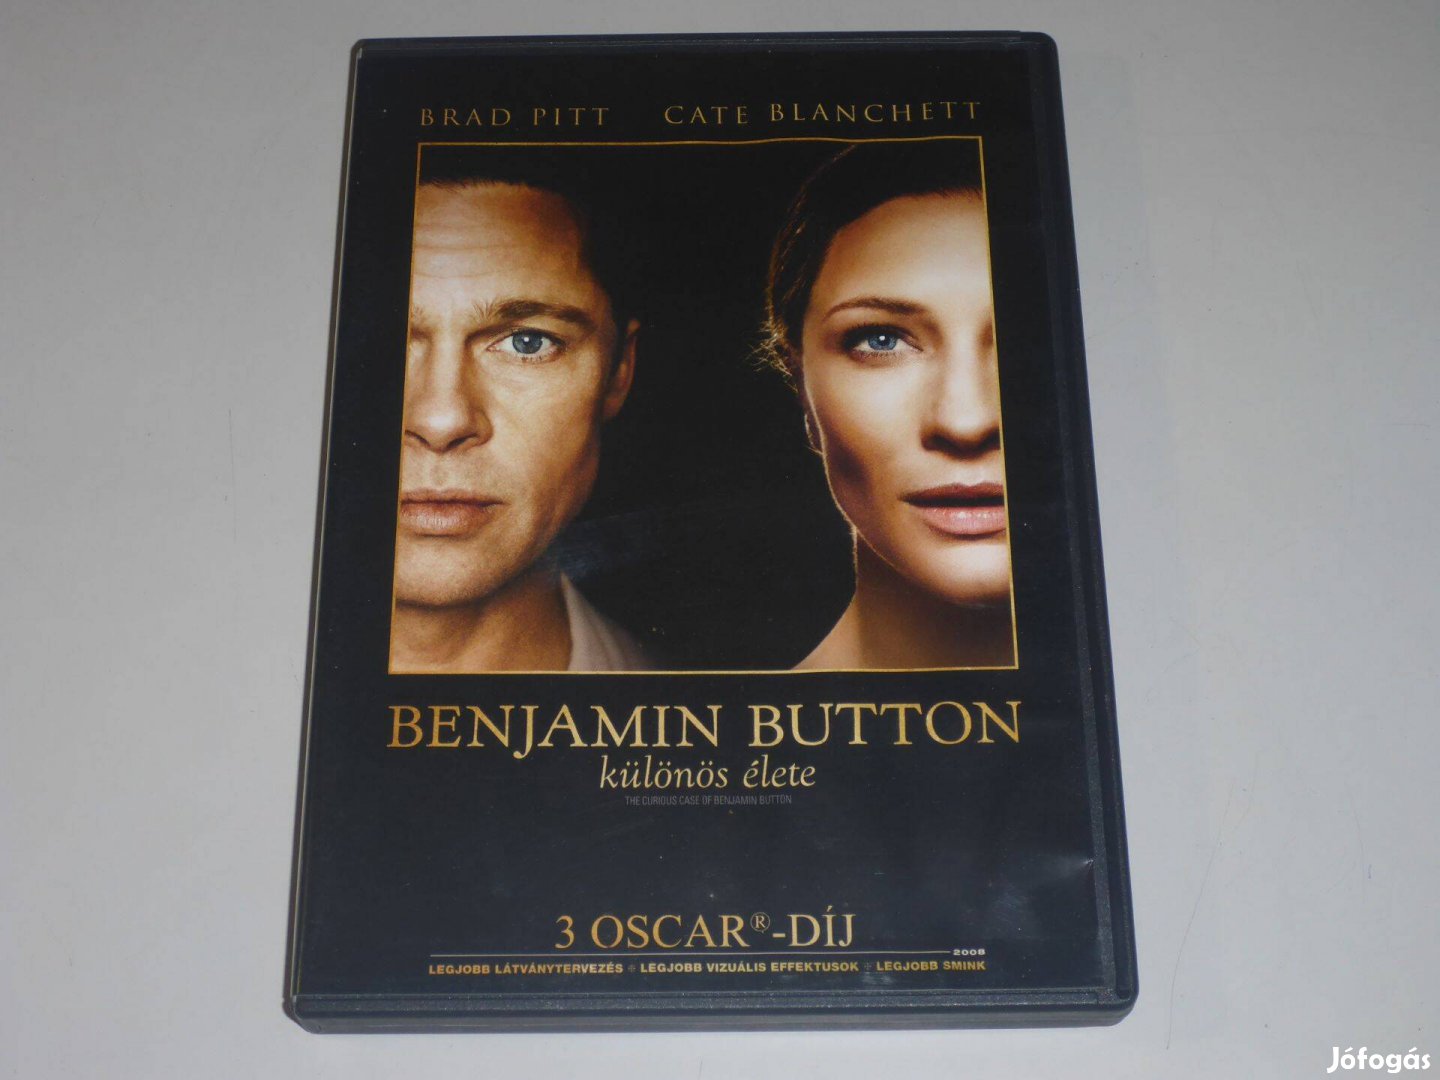 Benjamin Button különös élete DVD film "